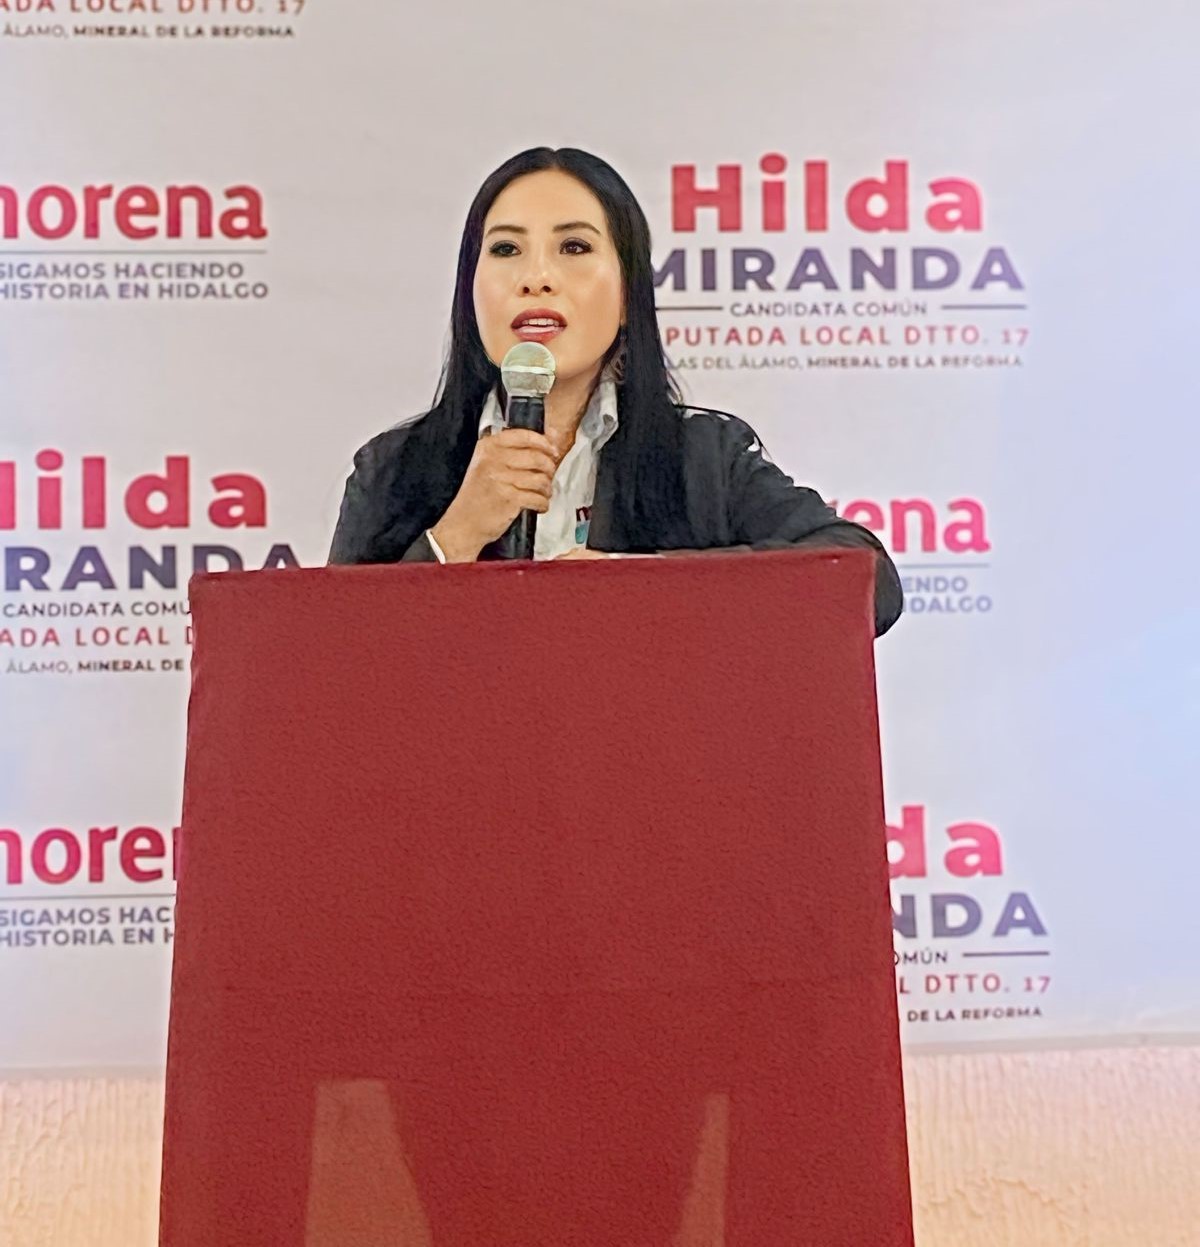 Hilda Miranda presenta propuestas para la transformación legislativa en Mineral de la Reforma